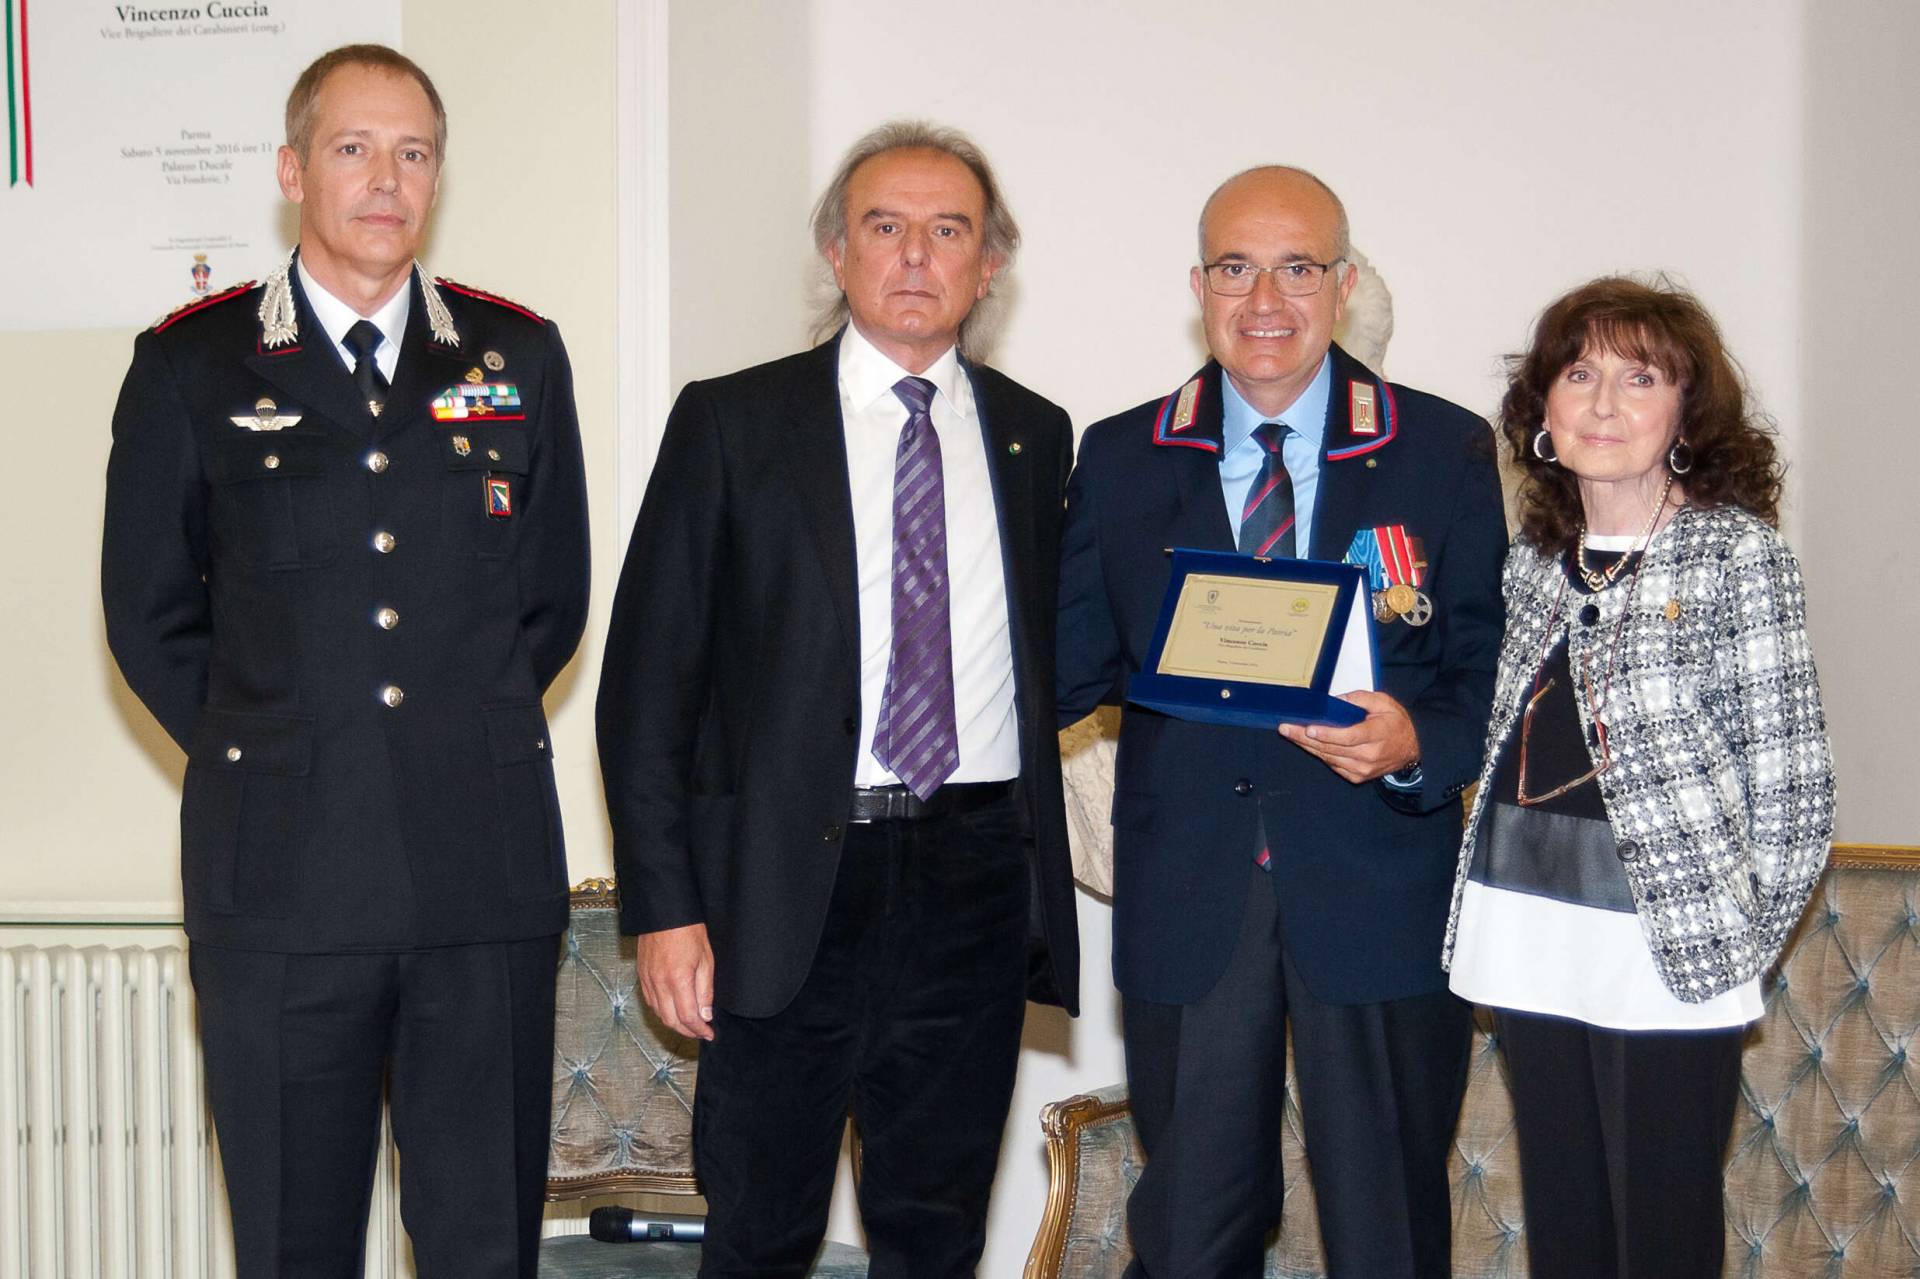 Una vita per la Patria 2016 - consegna del riconosciamento anno 2016 al Vice Brigadiere (cong.) Vincenzo Cuccia - Arma dei Carabinieri da parte dei Presidenti delle due associazioni